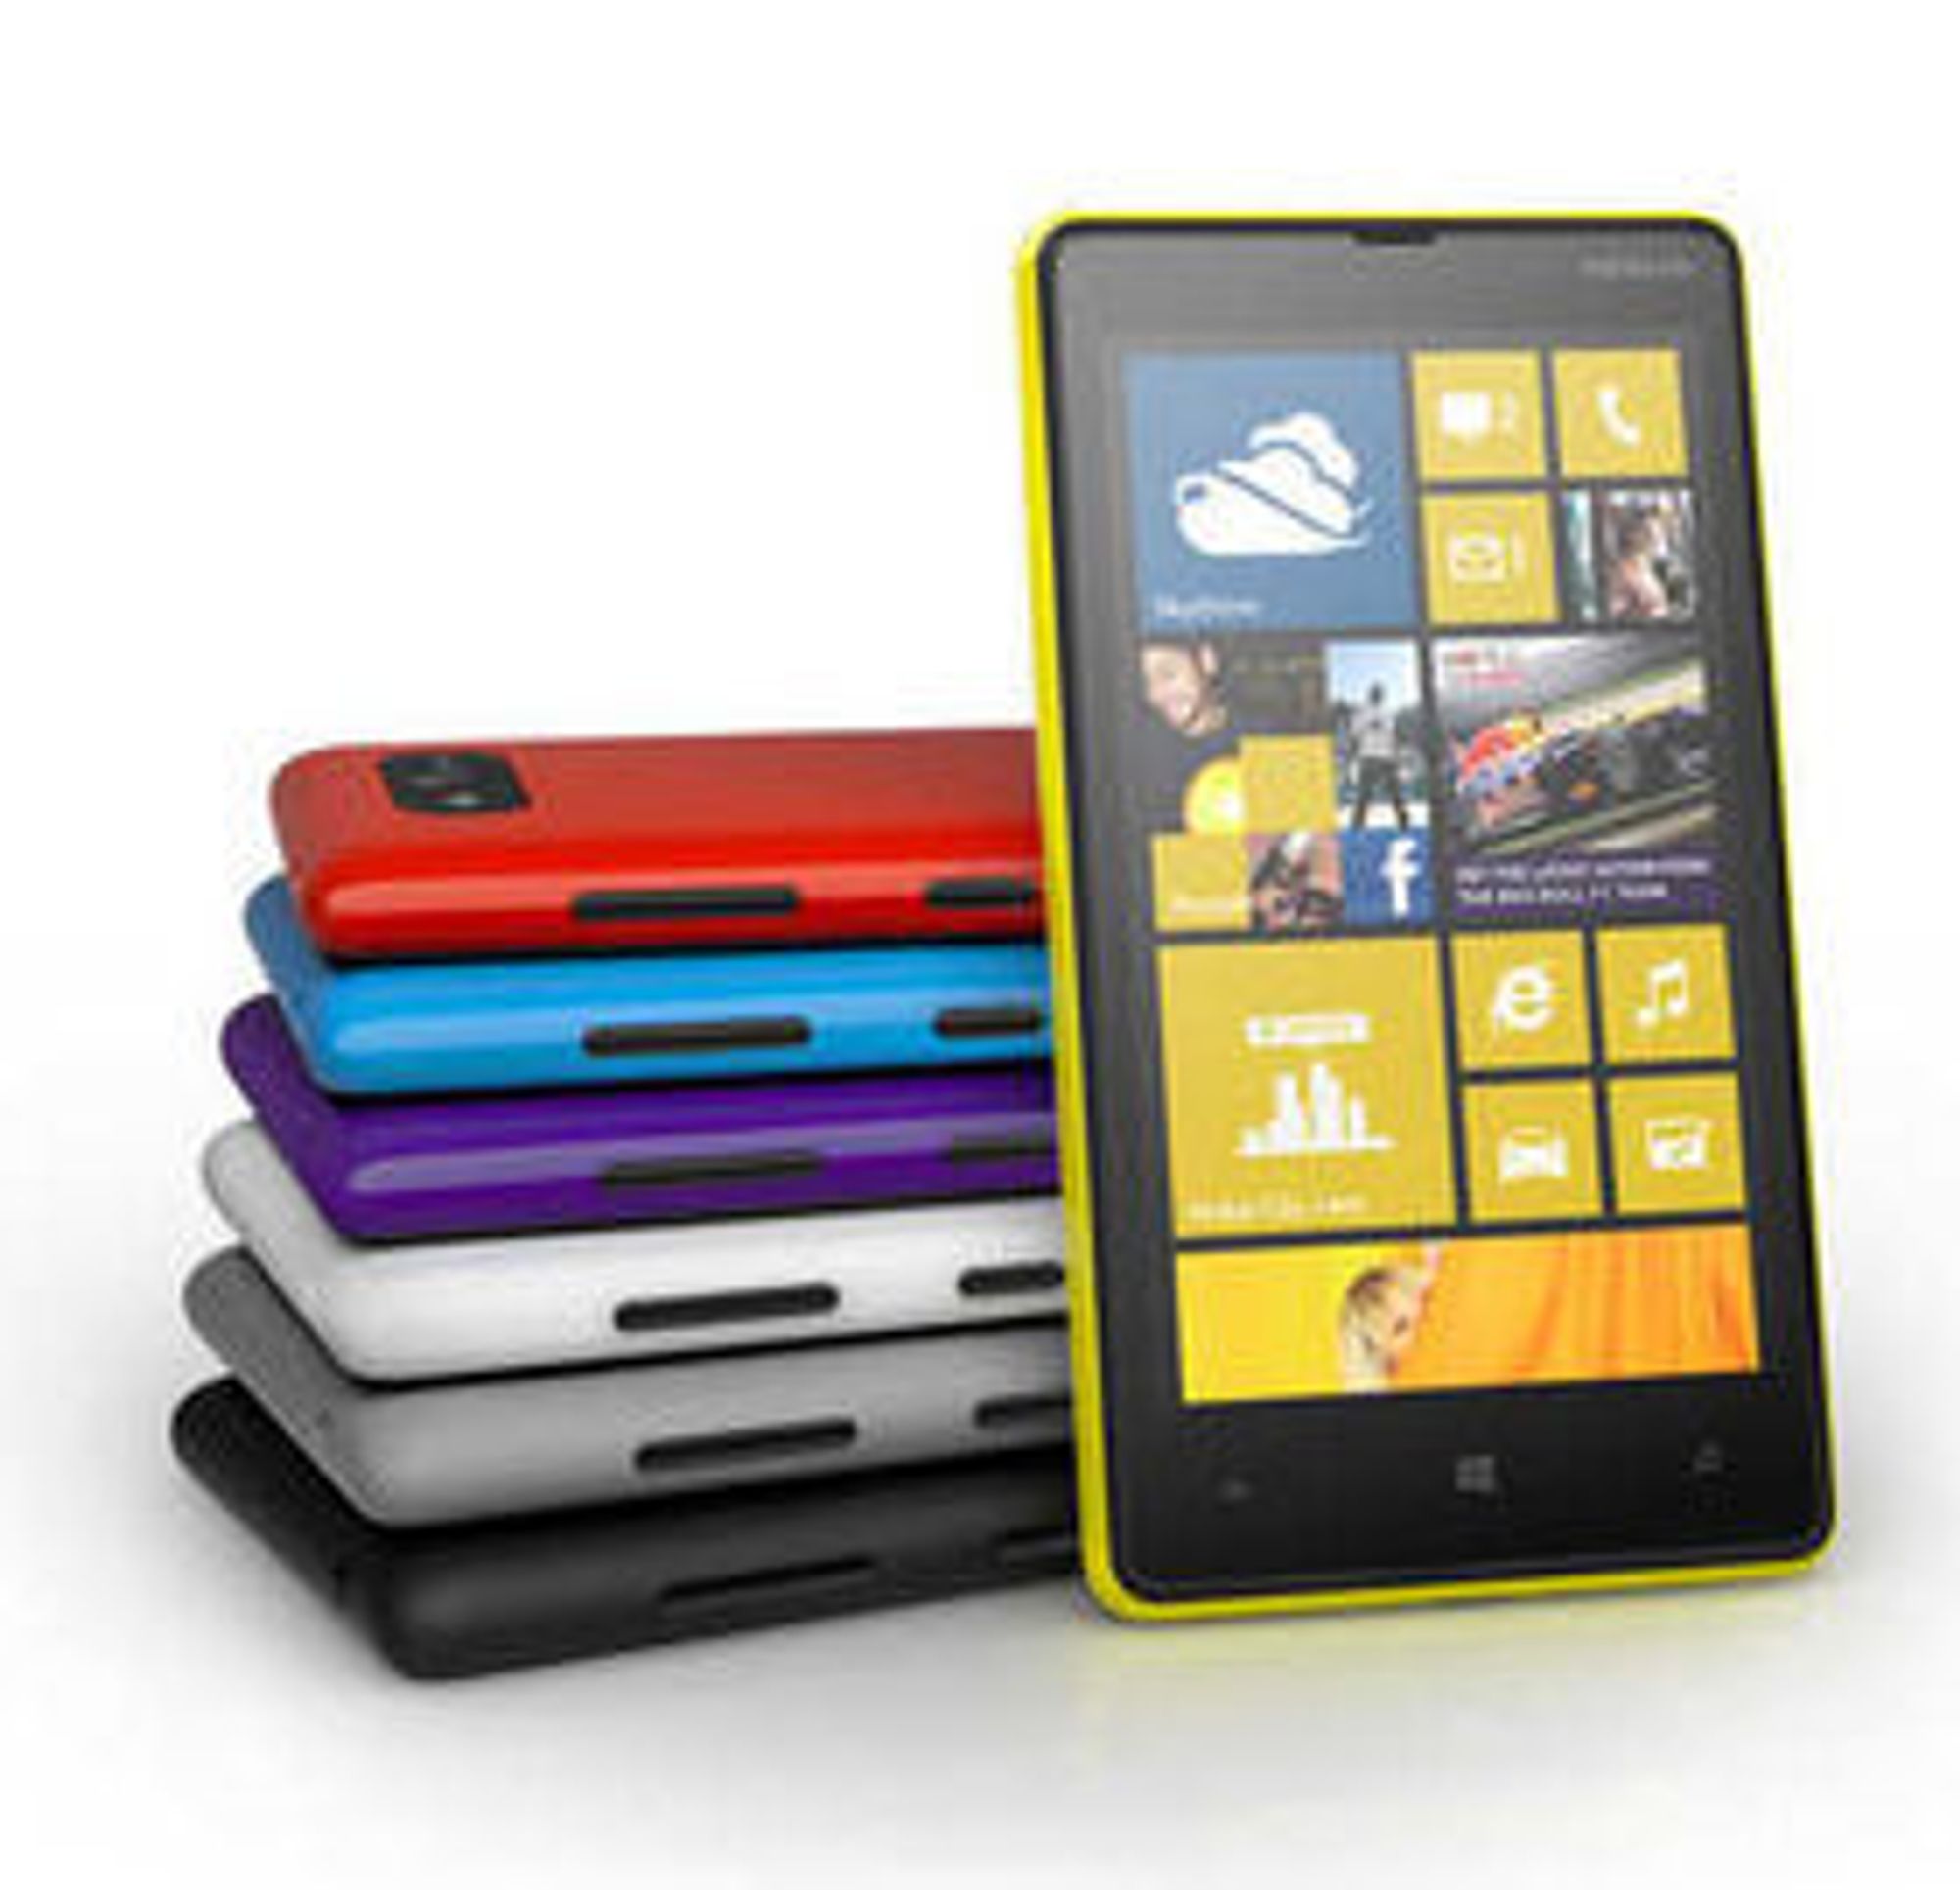 Inngangsmodellen til Nokias Win8-serie, Lumia 820, kommer i en rekke nye farger og med mulighet for å skifte deksel.